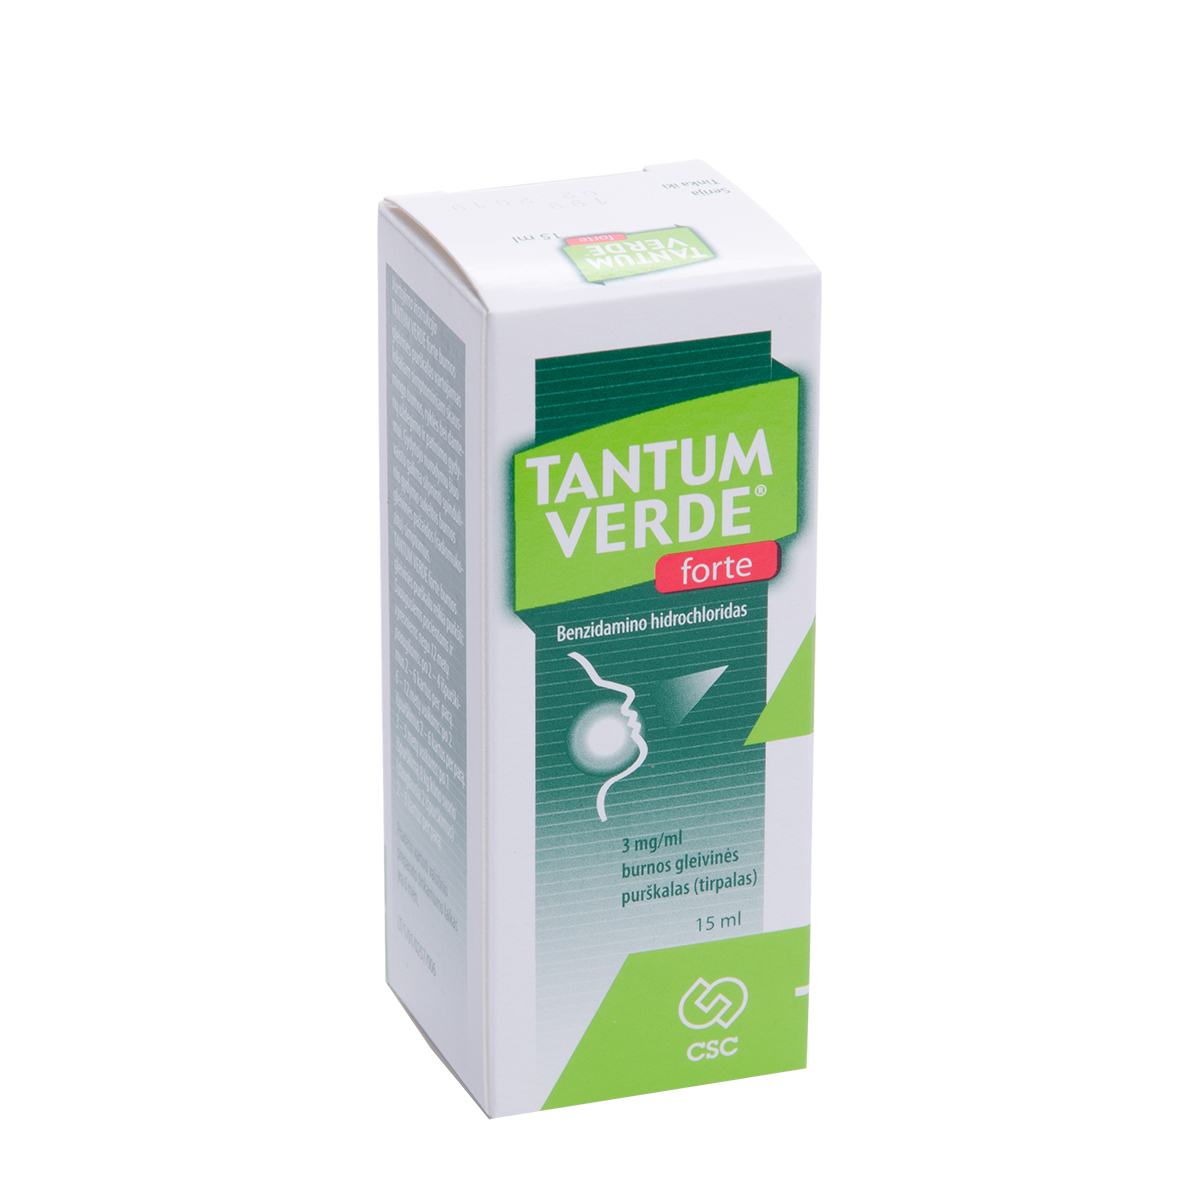 TANTUM VERDE FORTE, 3 mg/ml, burnos gleivinės purškalas (tirpalas), 15 ml